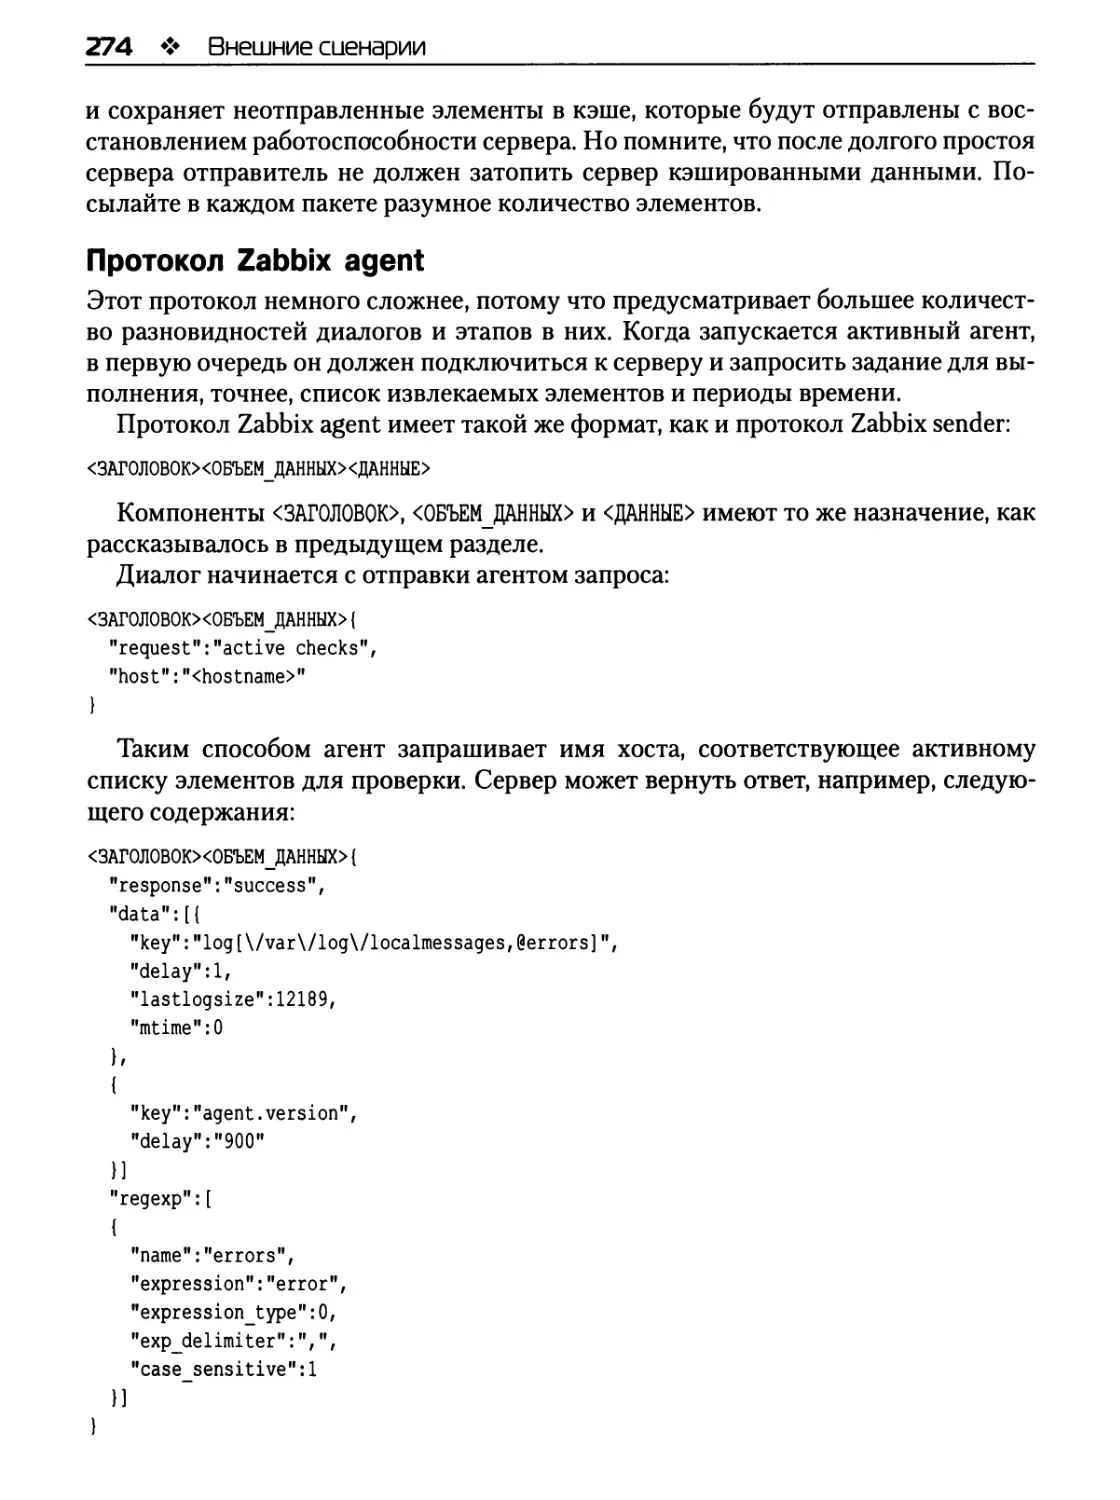 Протокол Zabbix agent